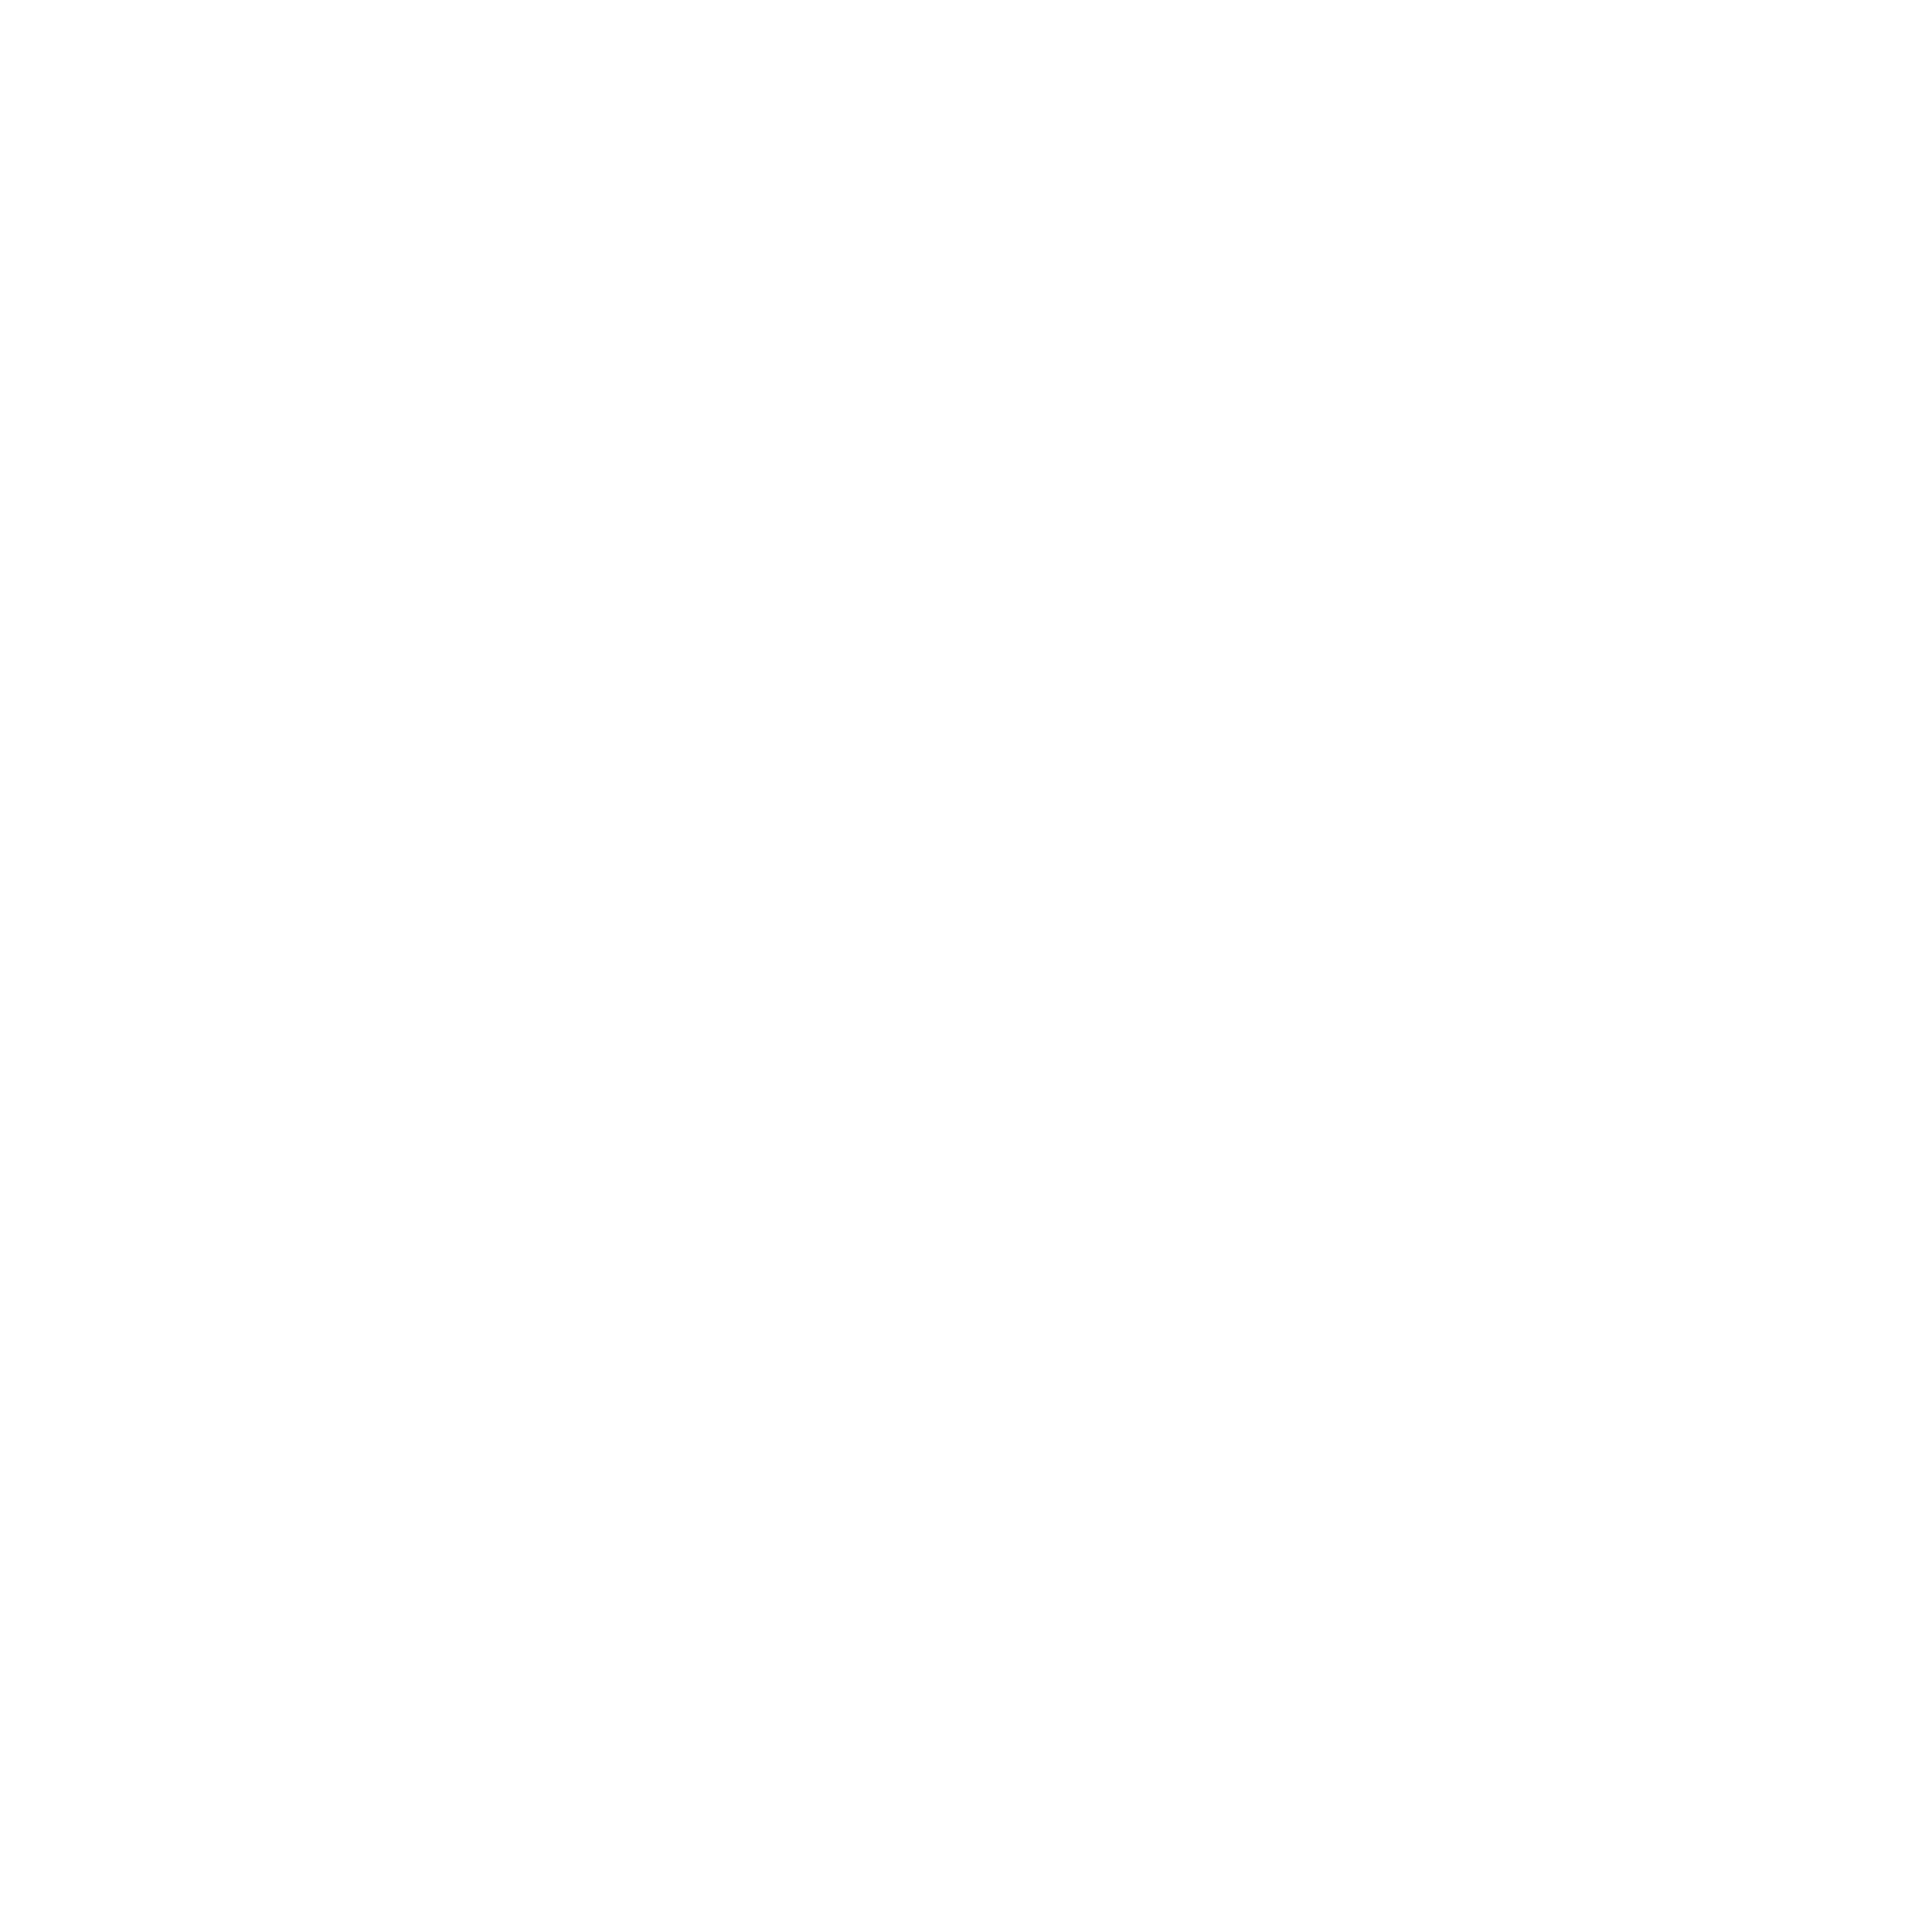 Alessandro Negrini